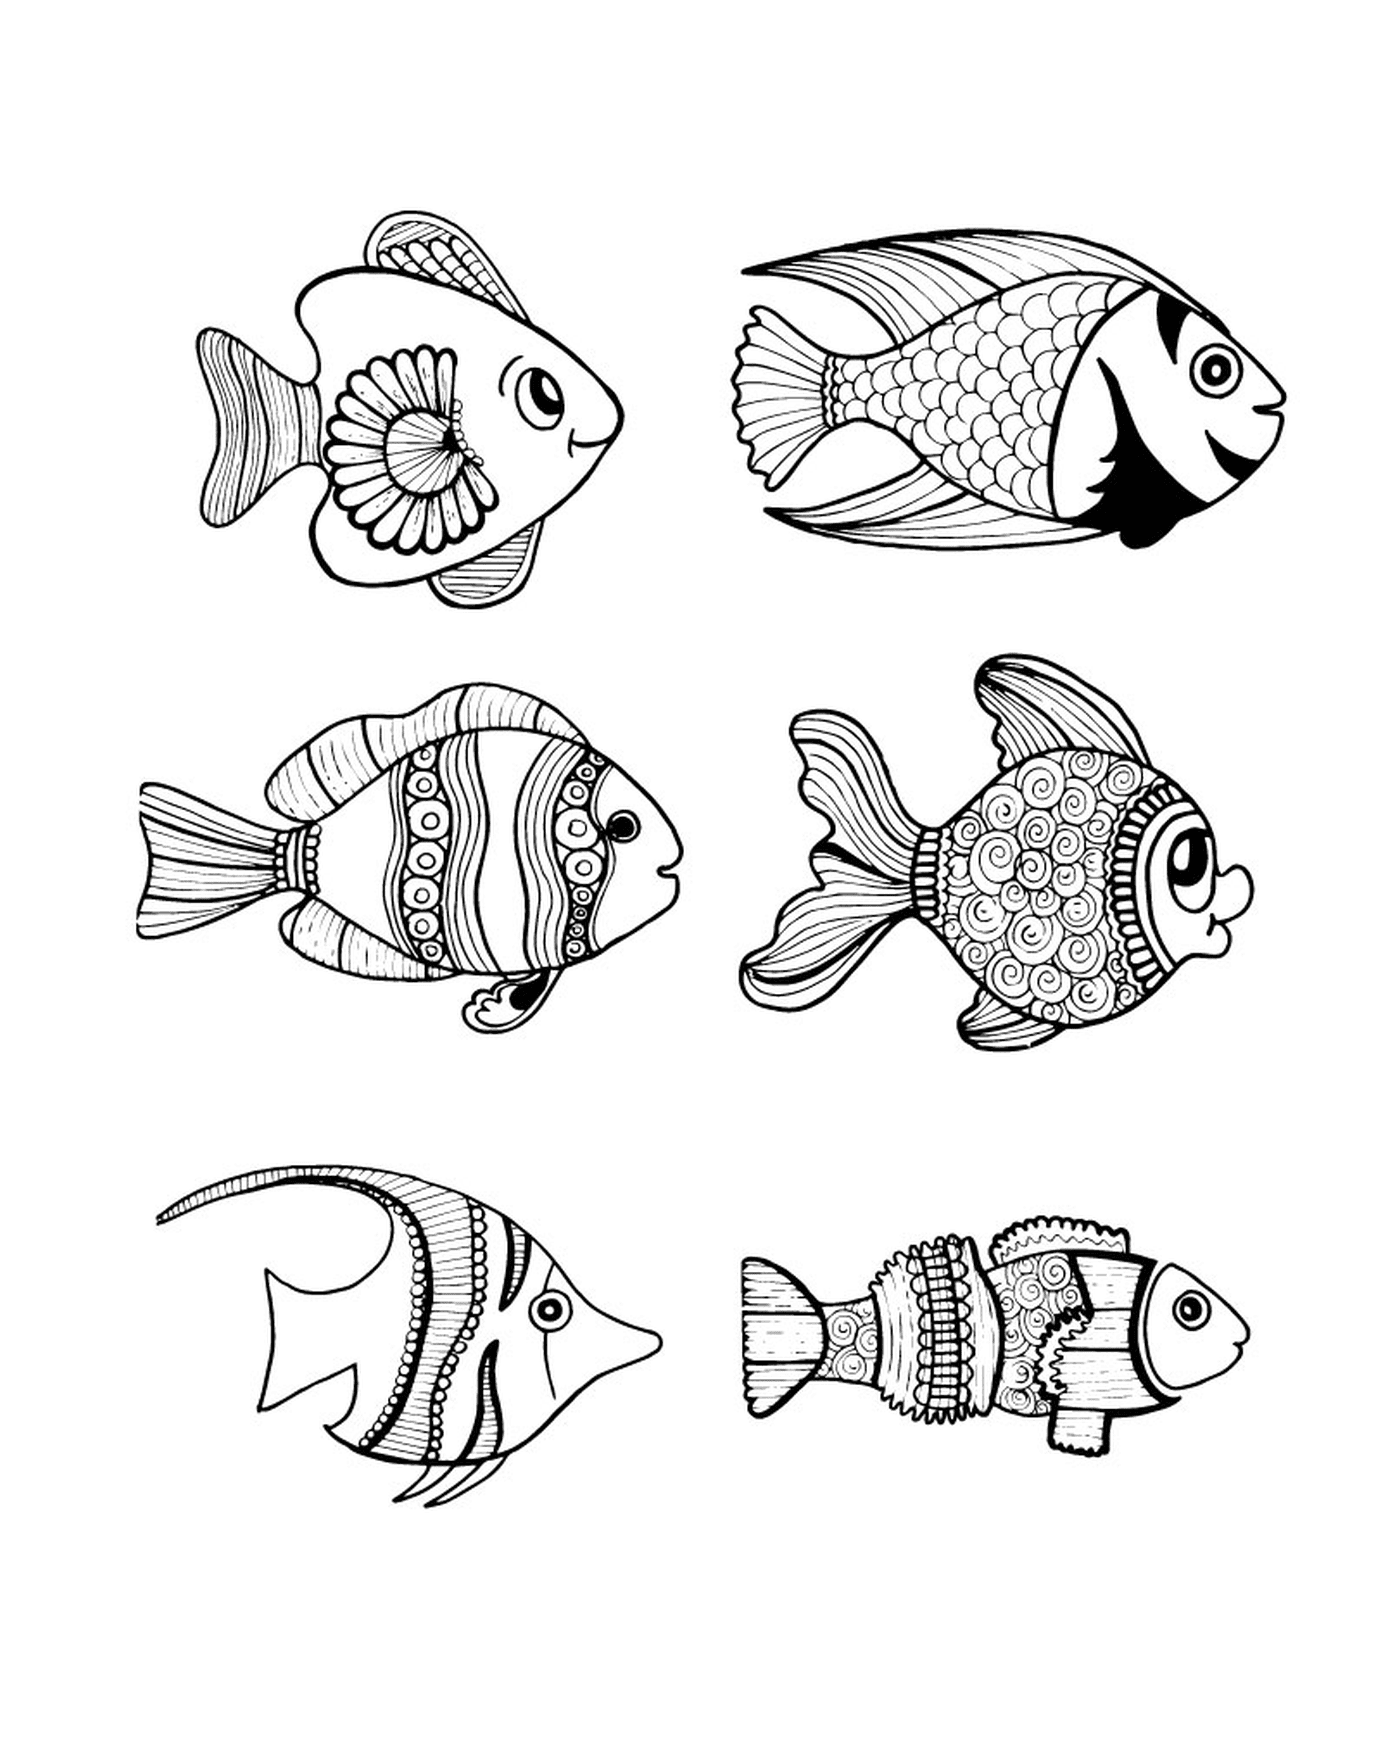  ein Satz von sechs schwarz-weißen Fischzeichnungen 